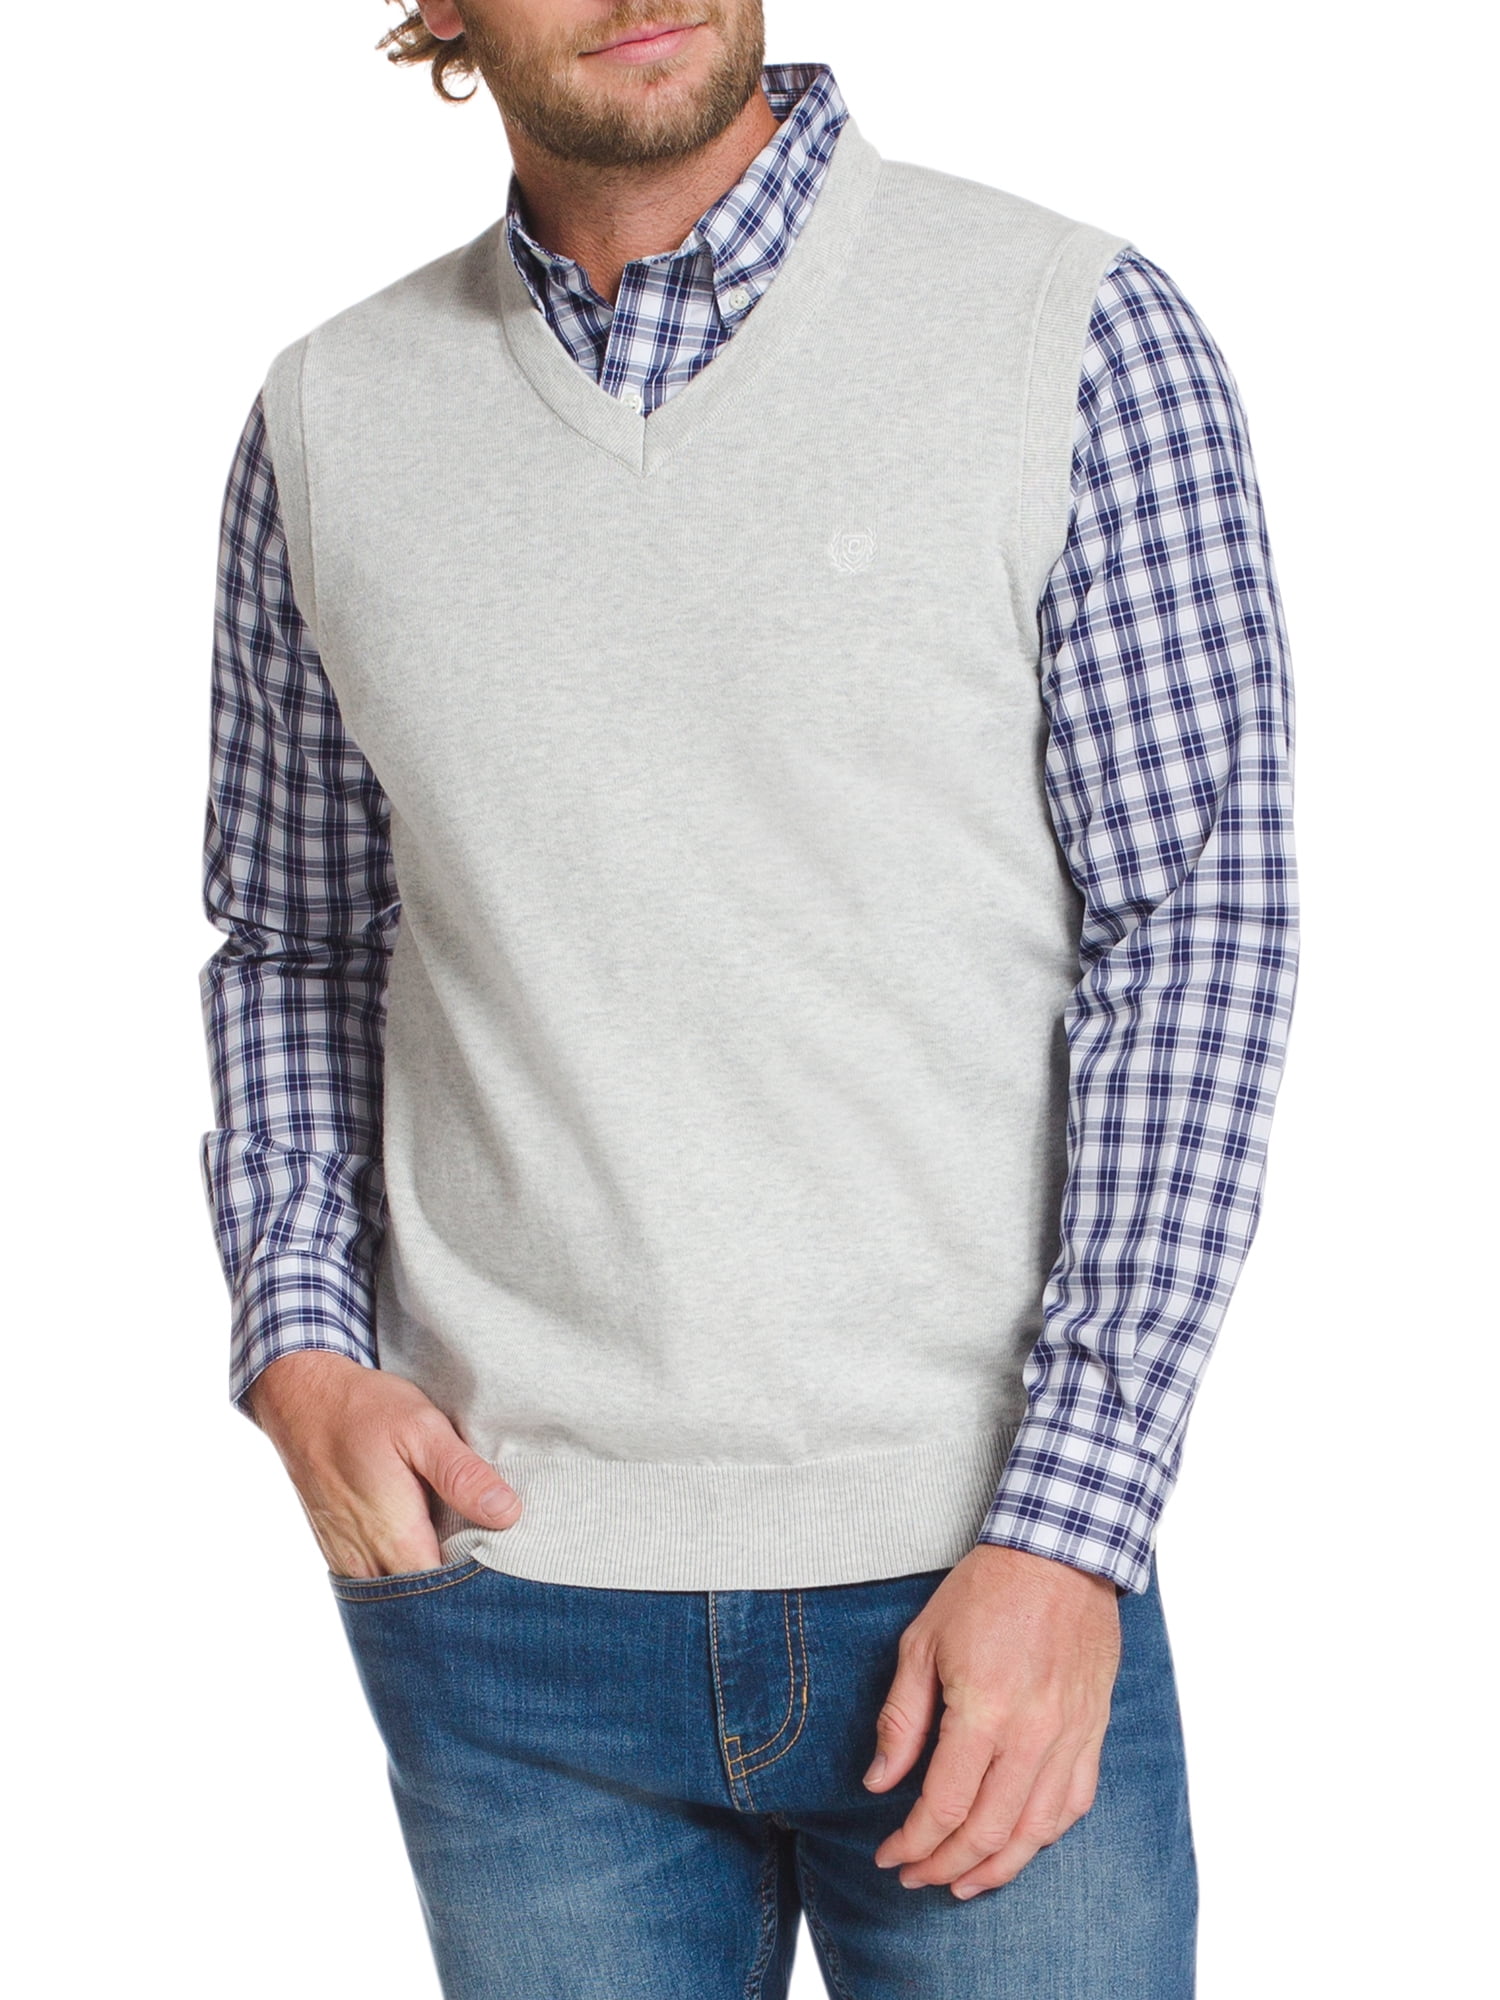 Chaps Men's Sleeveless Fine Gauge Sweater Vest - Walmart.com